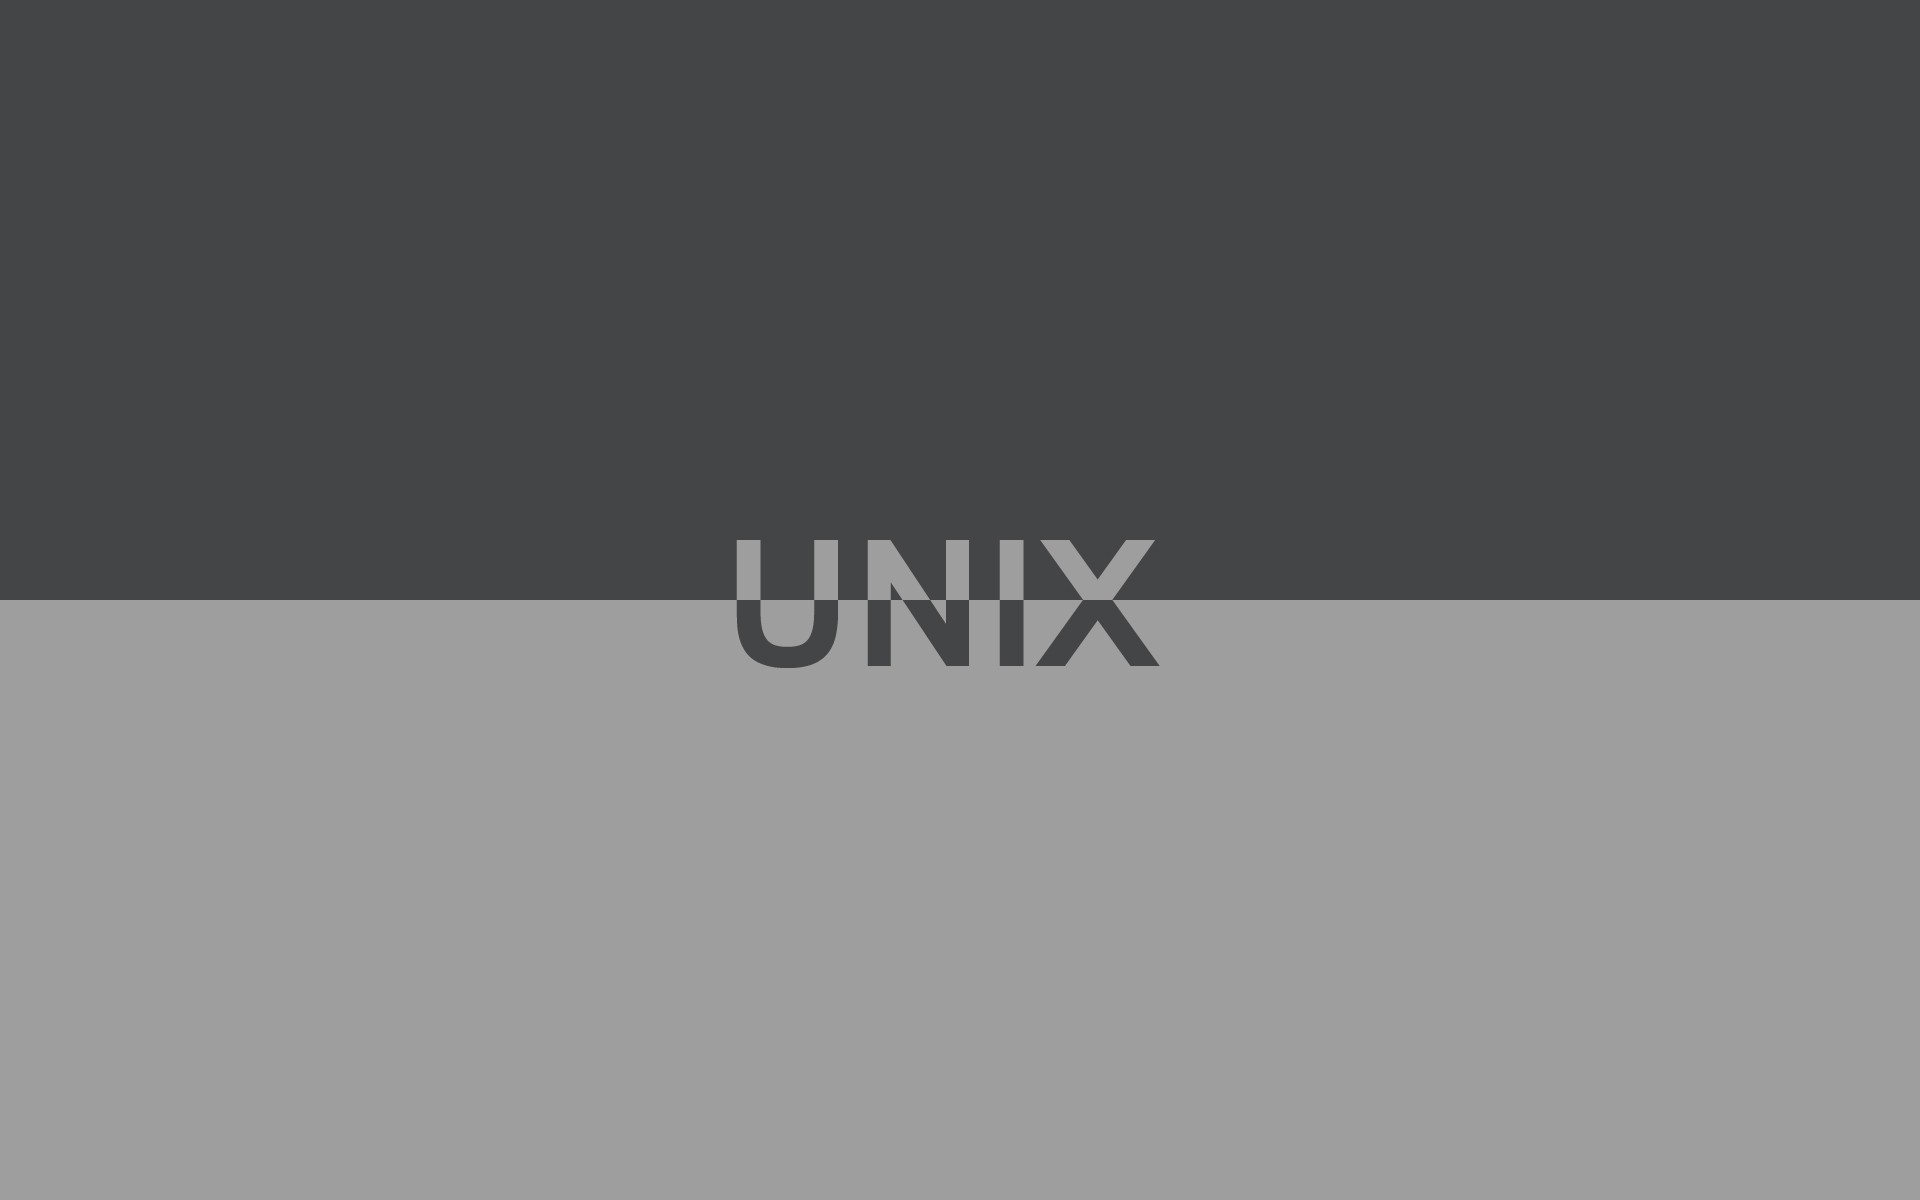 Unix Typography Minimalism 1920x1200